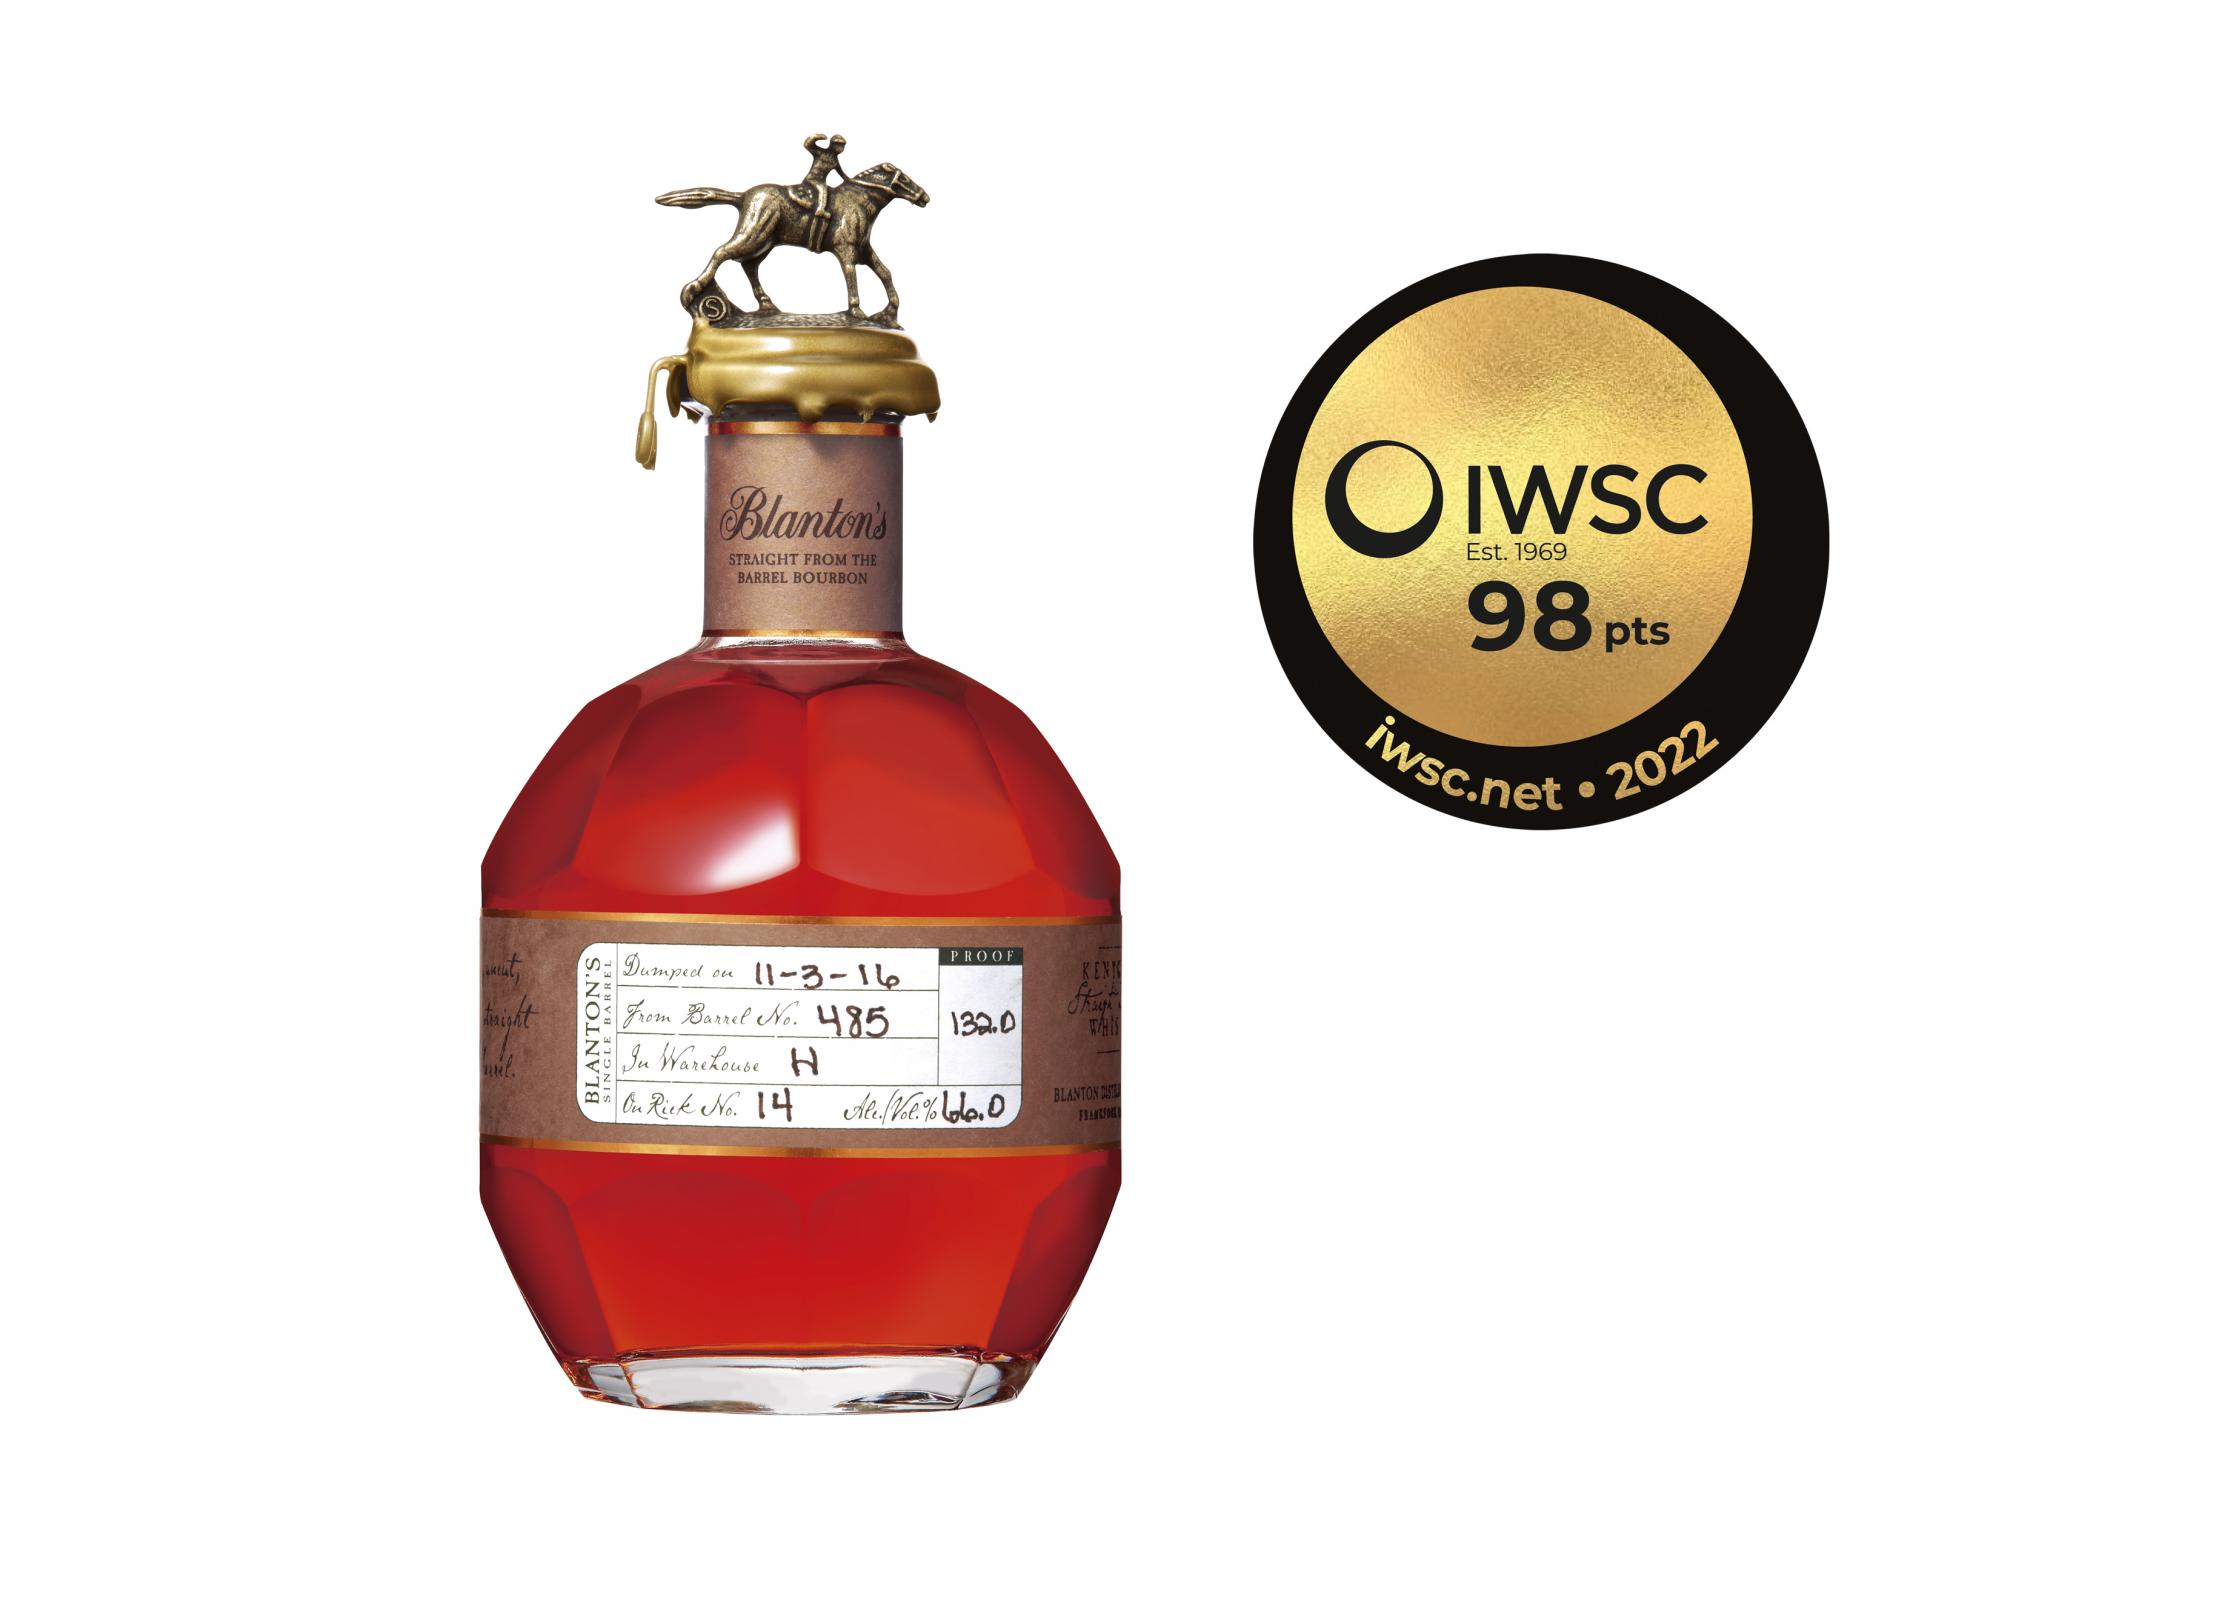 世界的な酒類コンペティション「IWSC2022」スピリッツ部門で“ブラントン・ストレート・フロム・ザ・バレル”が特別金賞を受賞